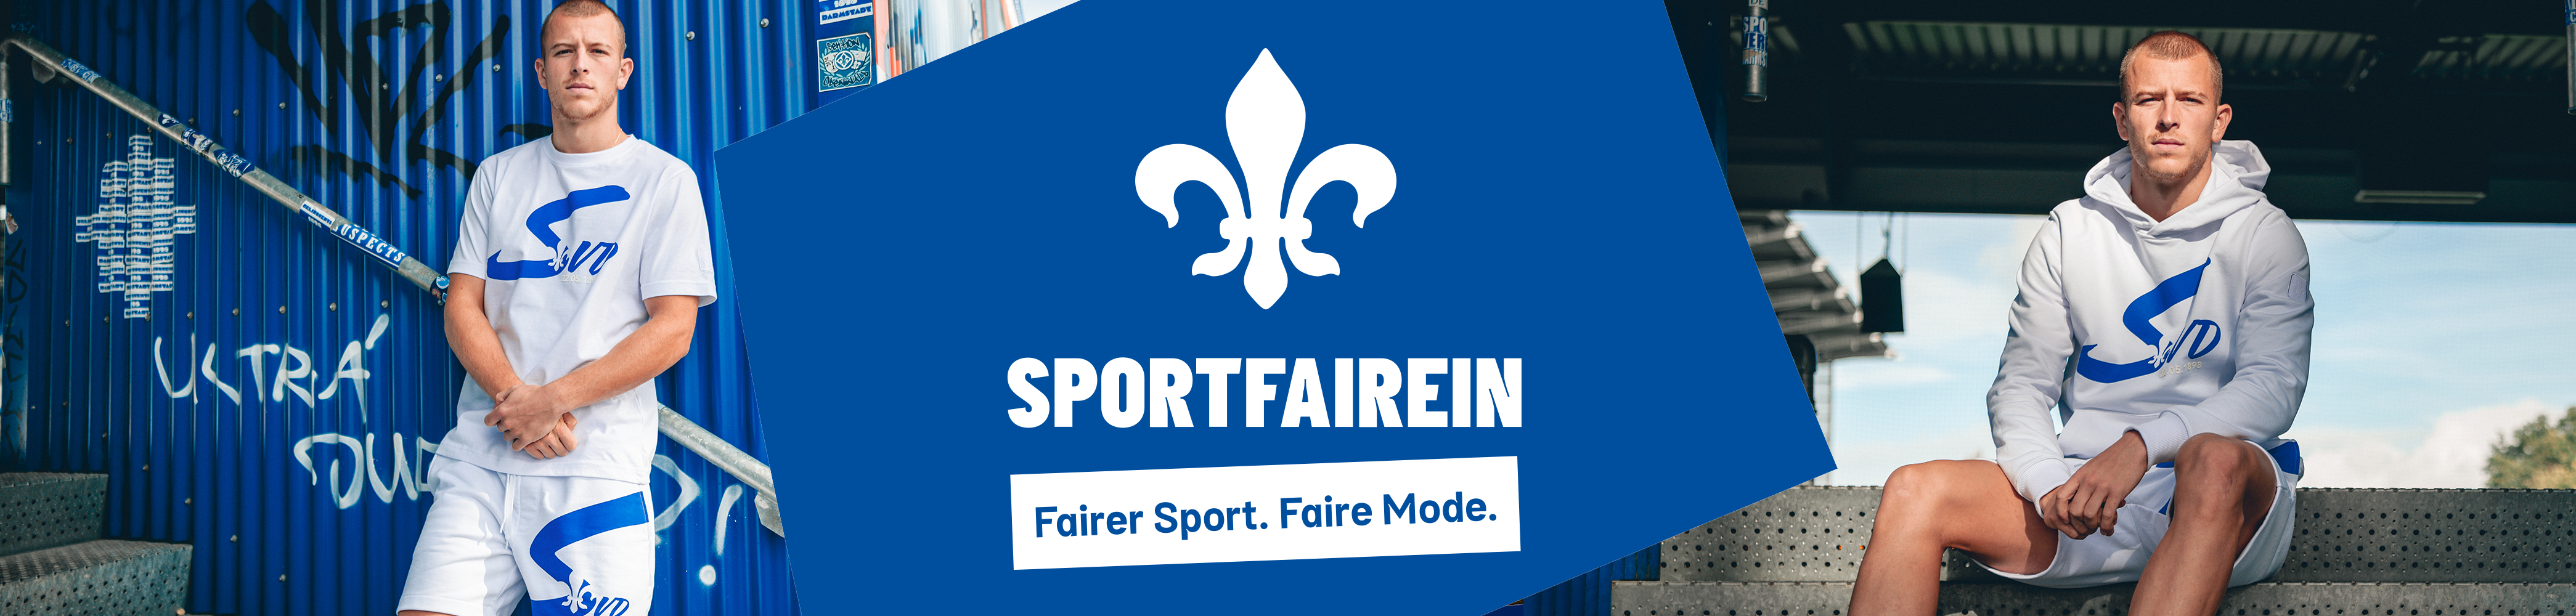 Stoerer_SportFAIRein_desktop